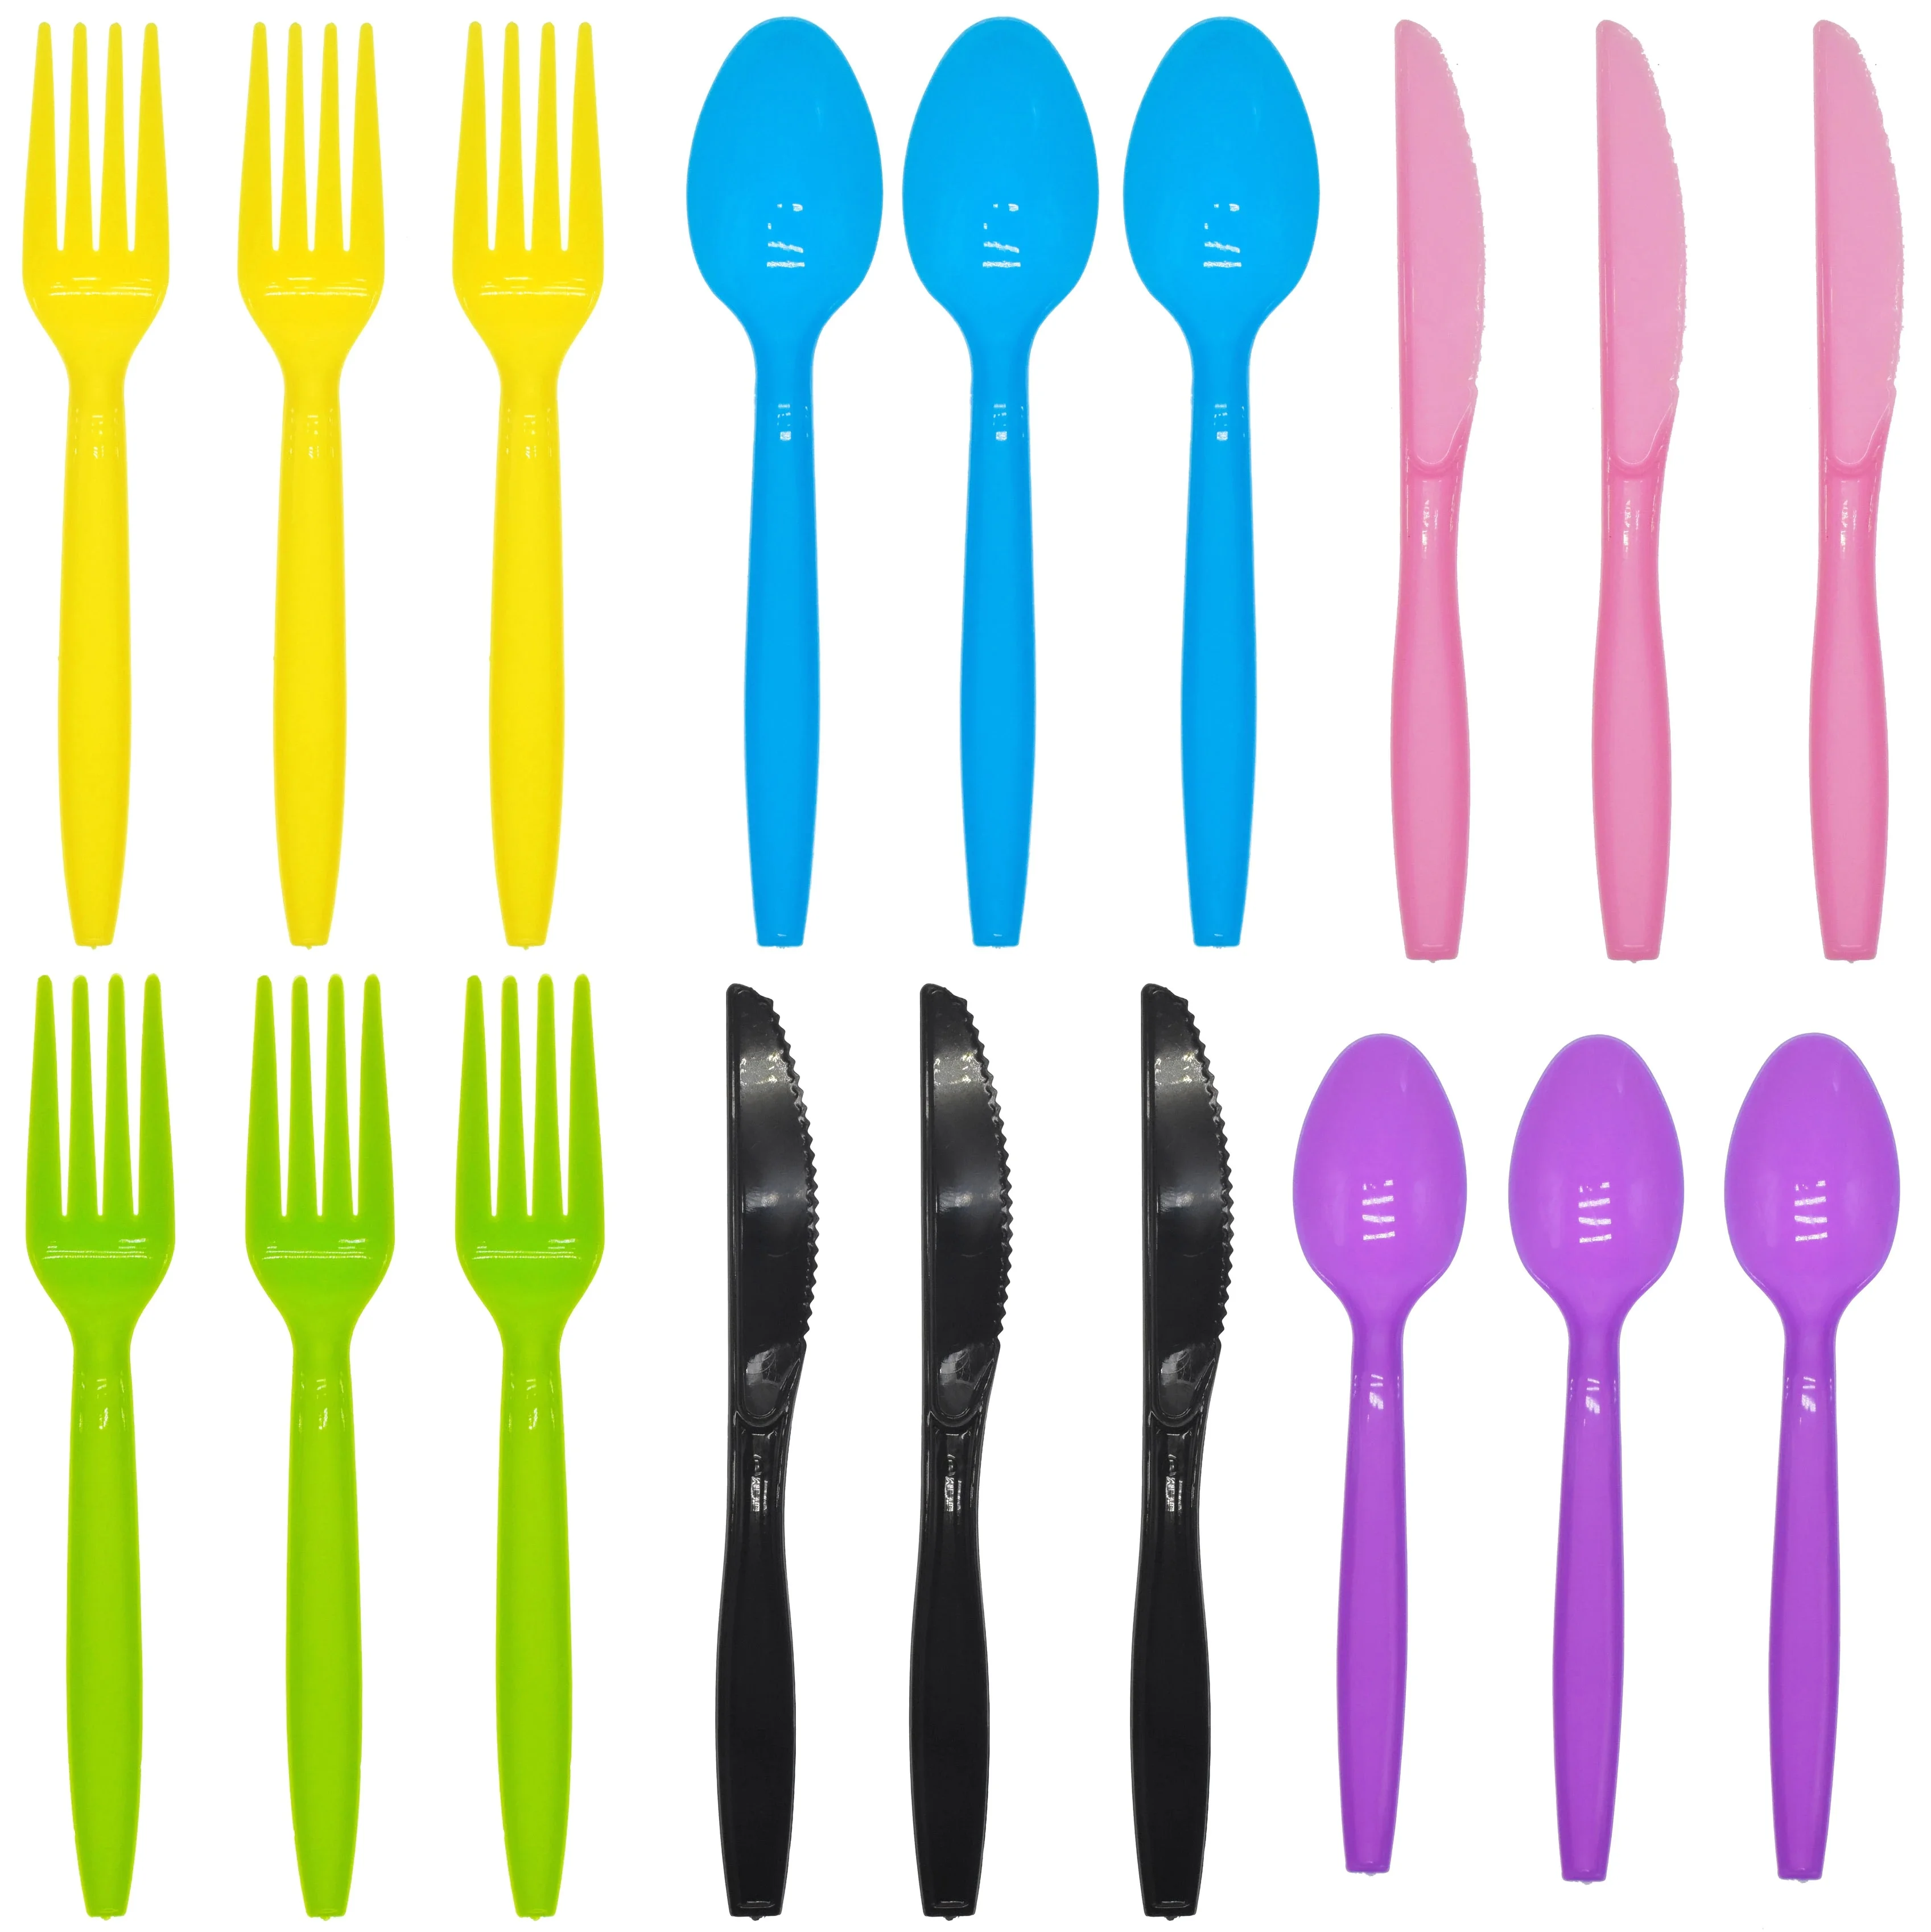 

Набор одноразовых ножей, вилок, ложек, желтого, синего, розового, черного, фиолетового, зеленого цветов